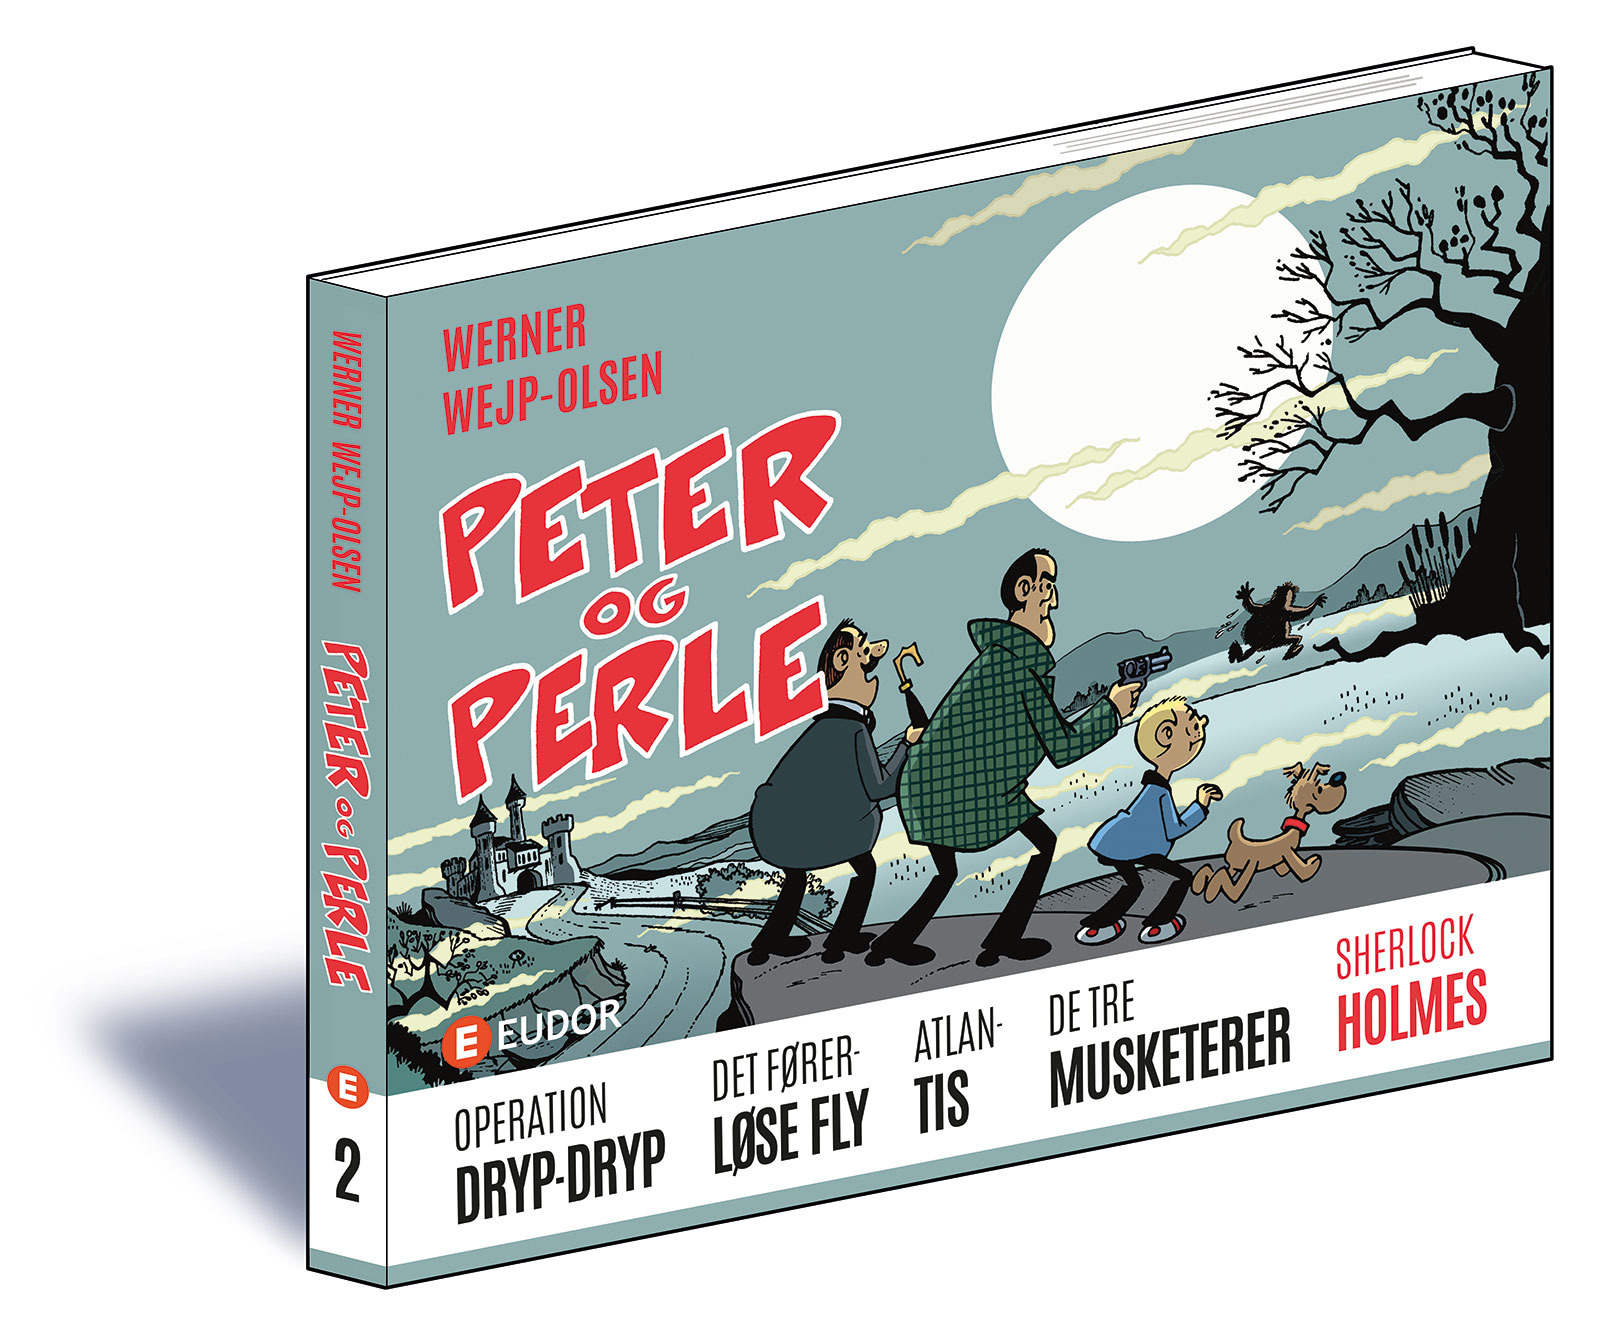 Werner Wejp-Olsens "Peter og Perle 2: Sherlock Holmes"